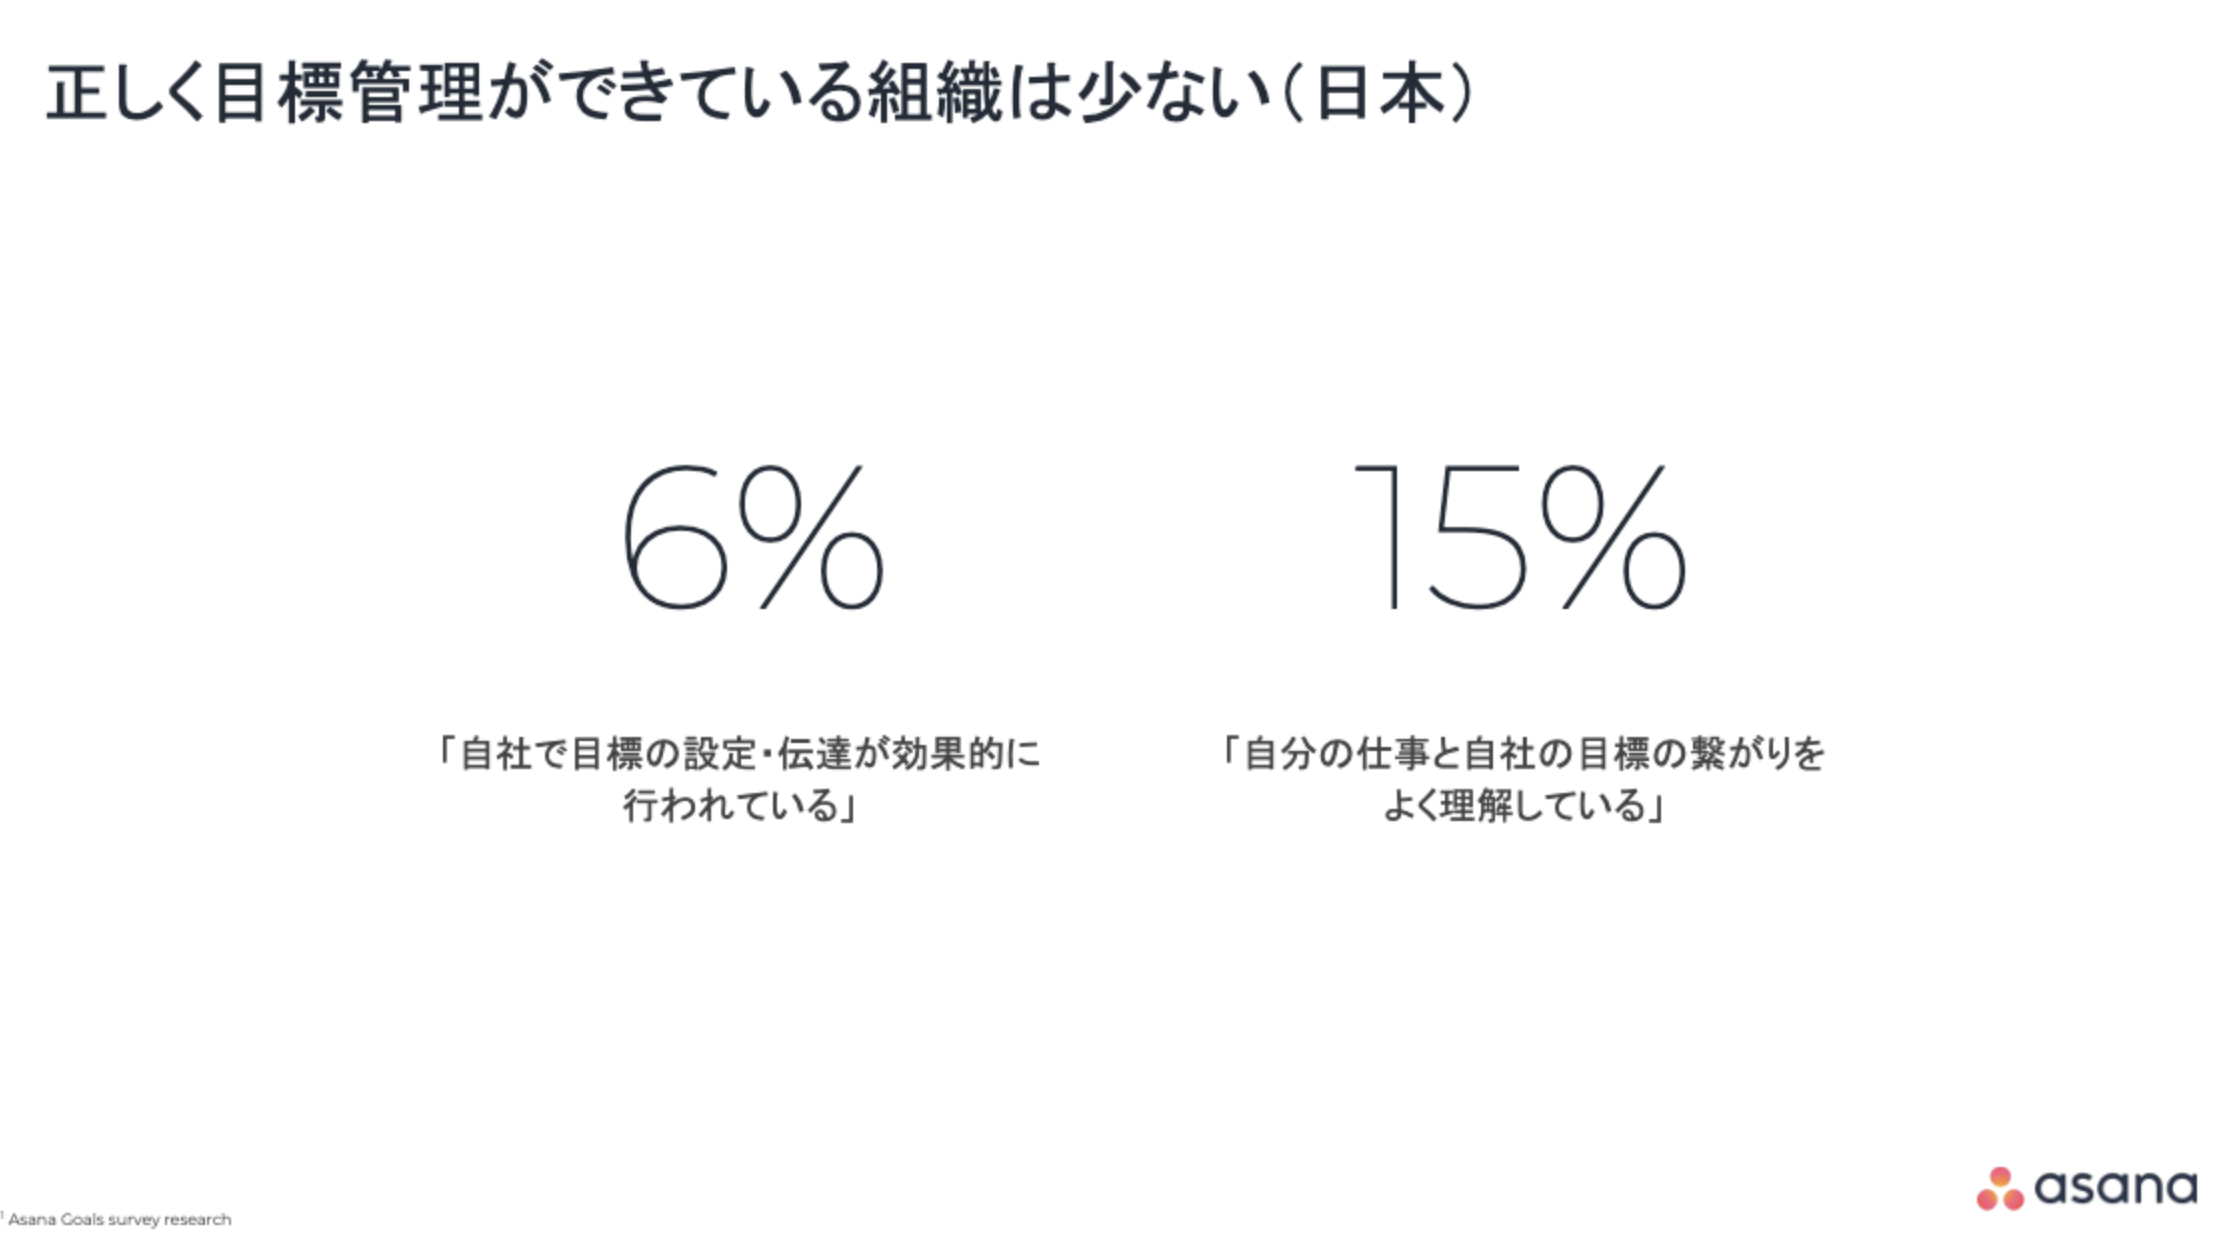 Asana Japan株式会社、「Asana Goals Survey Research」